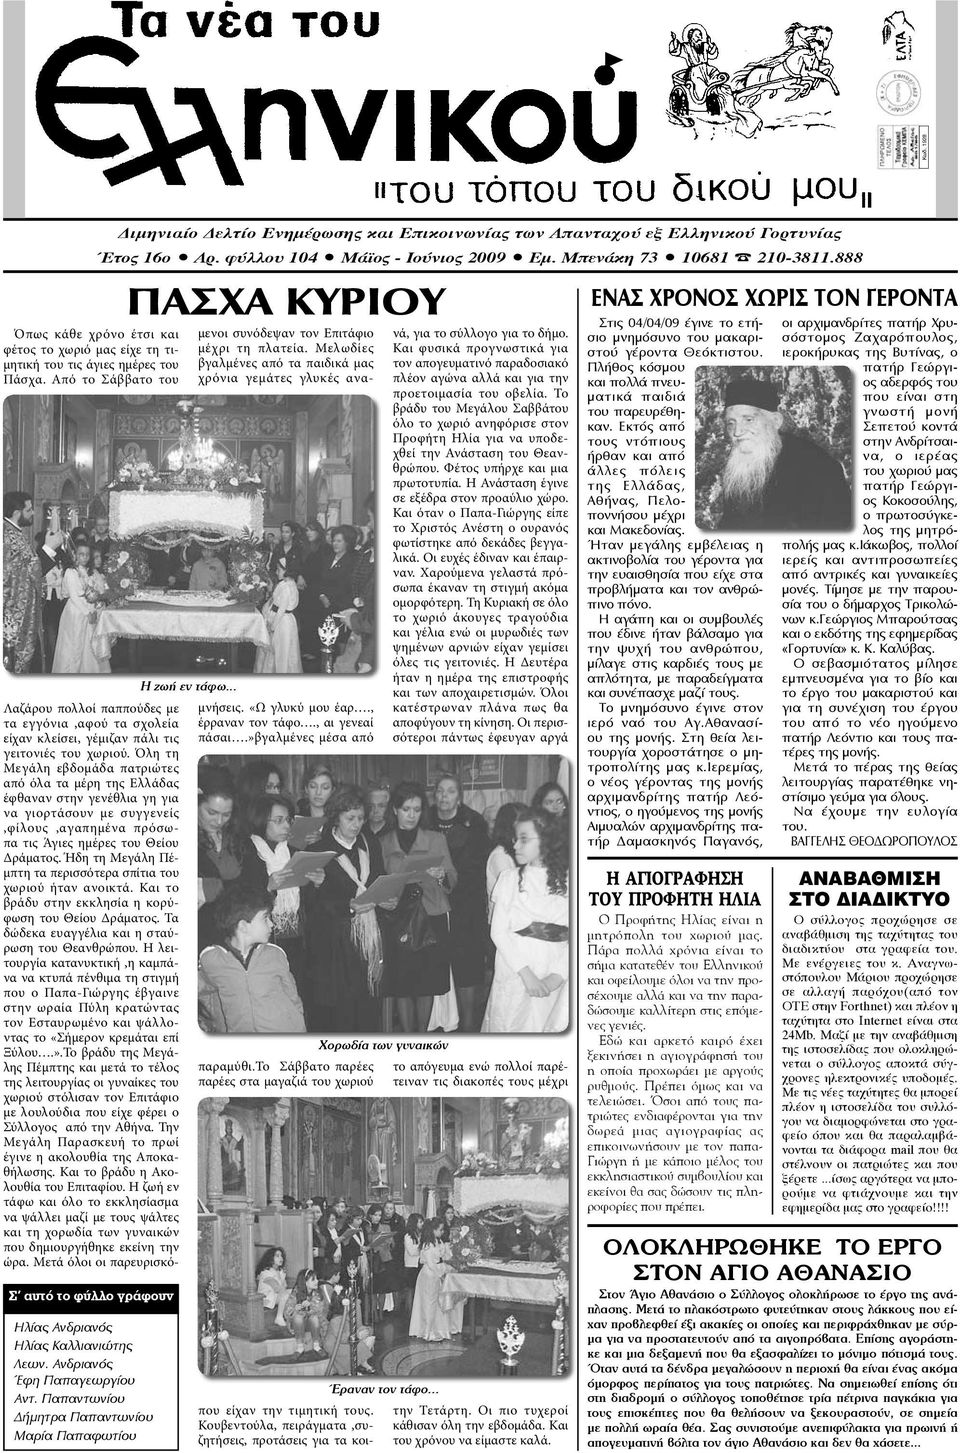 Όλη τη Μεγάλη εβδομάδα πατριώτες από όλα τα μέρη της Ελλάδας έφθαναν στην γενέθλια γη για να γιορτάσουν με συγγενείς,φίλους,αγαπημένα πρόσωπα τις Άγιες ημέρες του Θείου Δράματος.